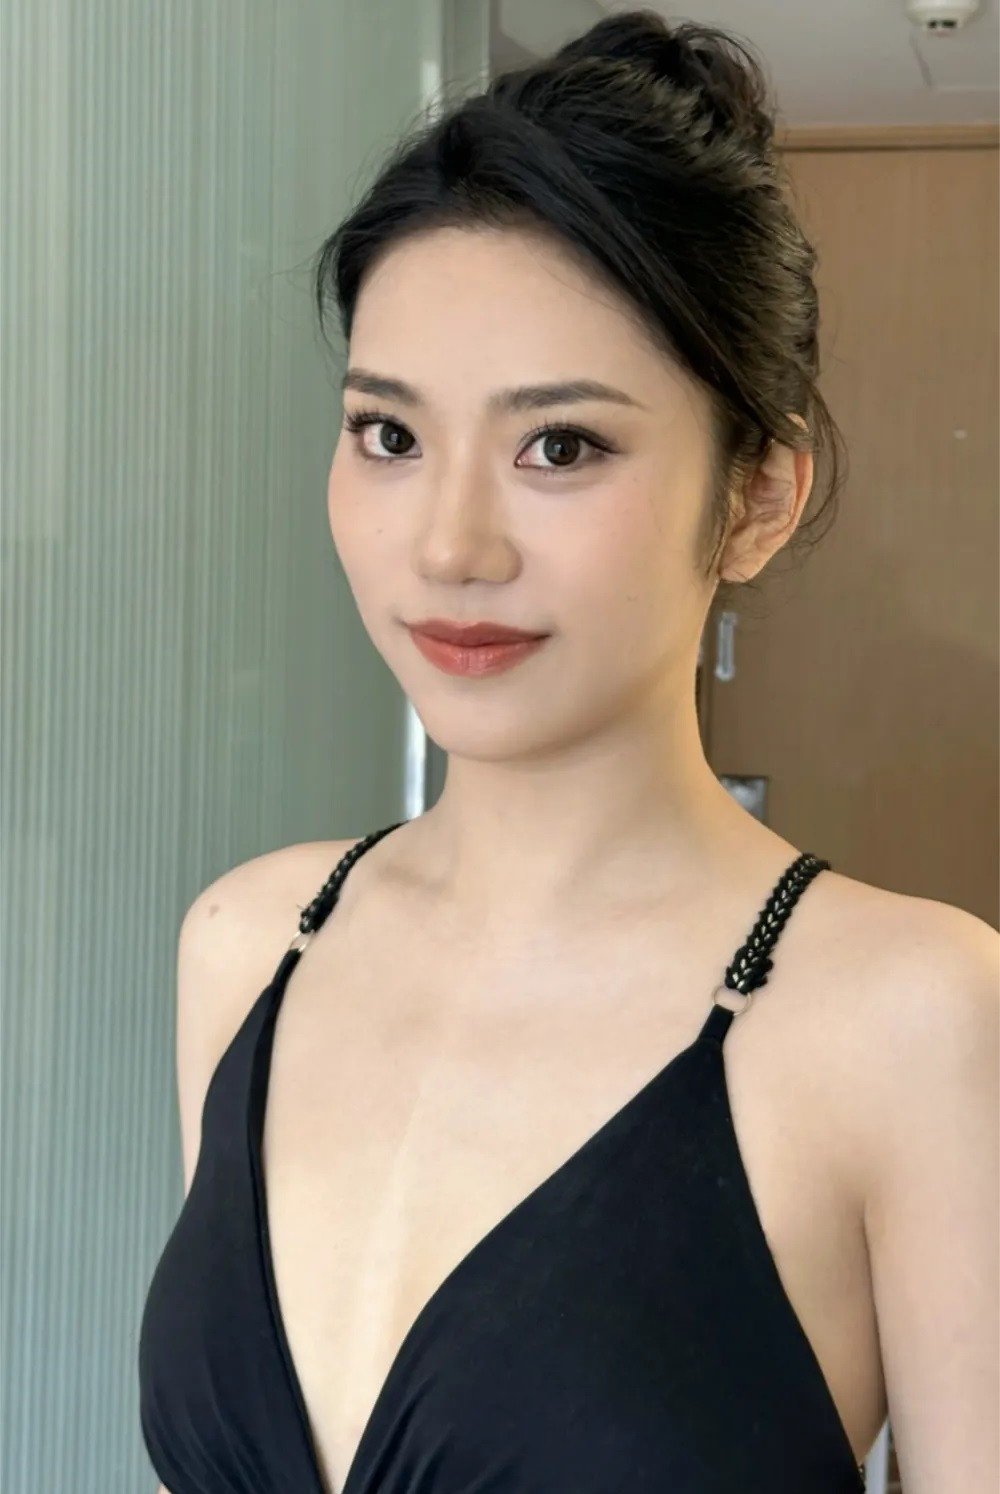 Lauren (22 tuổi) được cho là có nét
giống Hoa hậu ảnh Đặng Thượng Văn. Cô vừa tốt nghiệp ngành Quản lý
kinh doanh và chuẩn bị lên học Thạc sĩ.